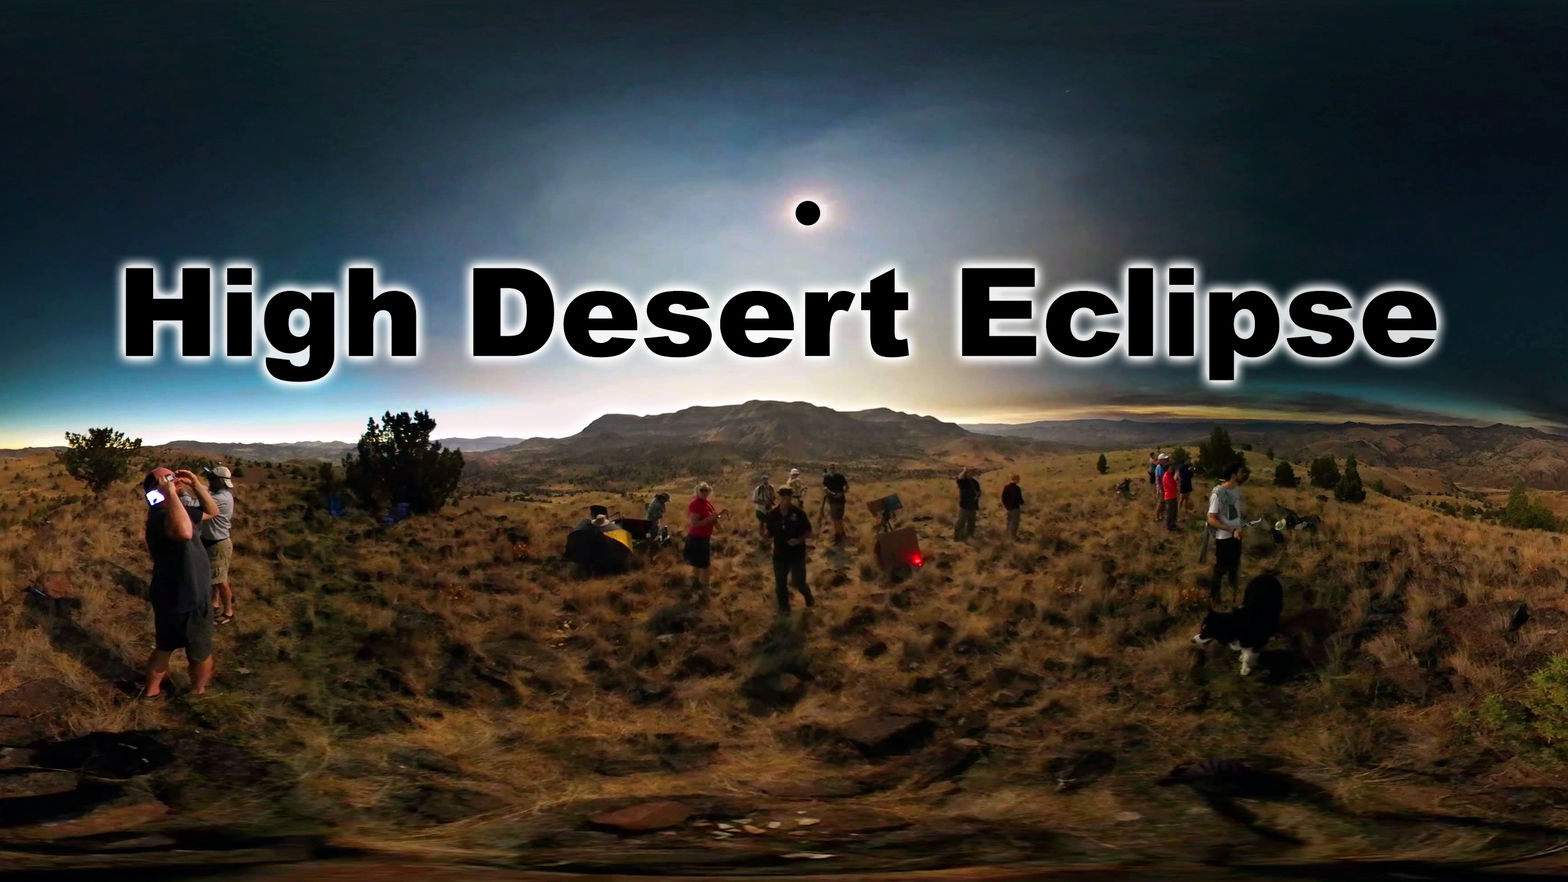 High Desert Eclipse